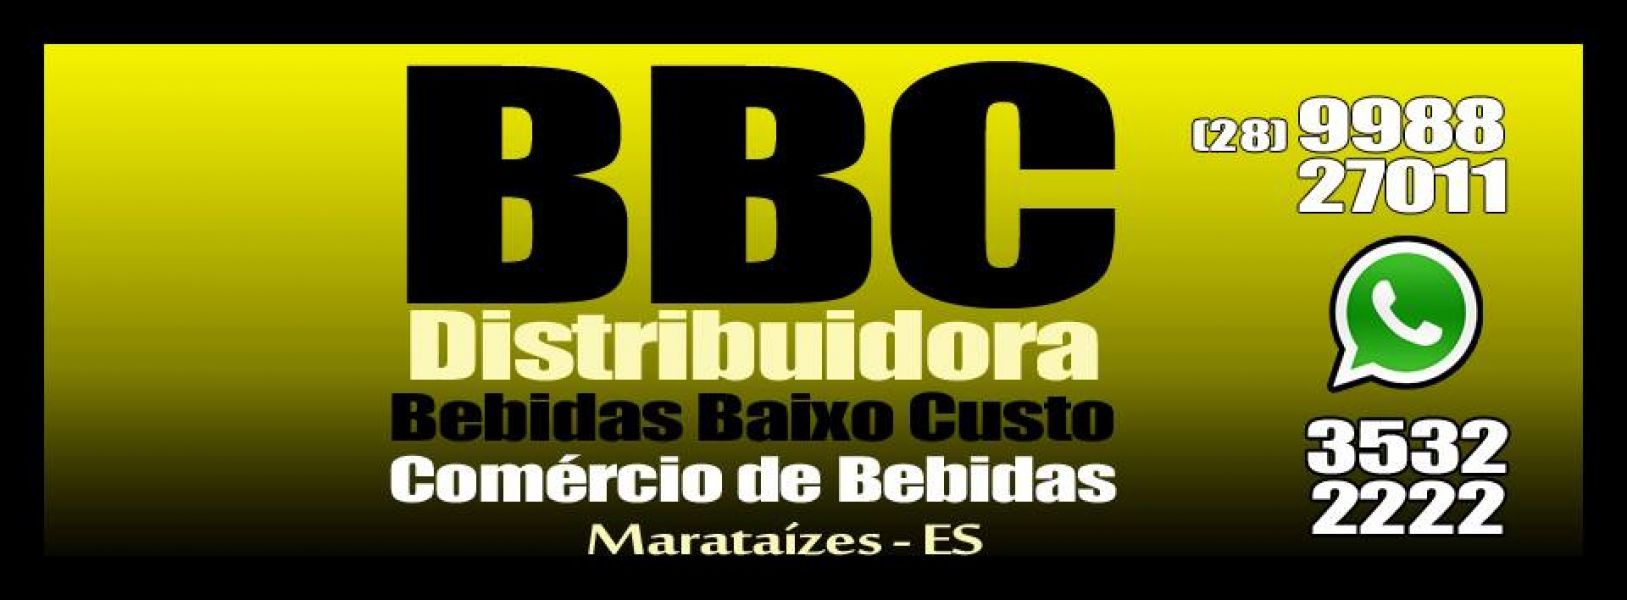 BBC BEBIDAS BAIXO CUSTO